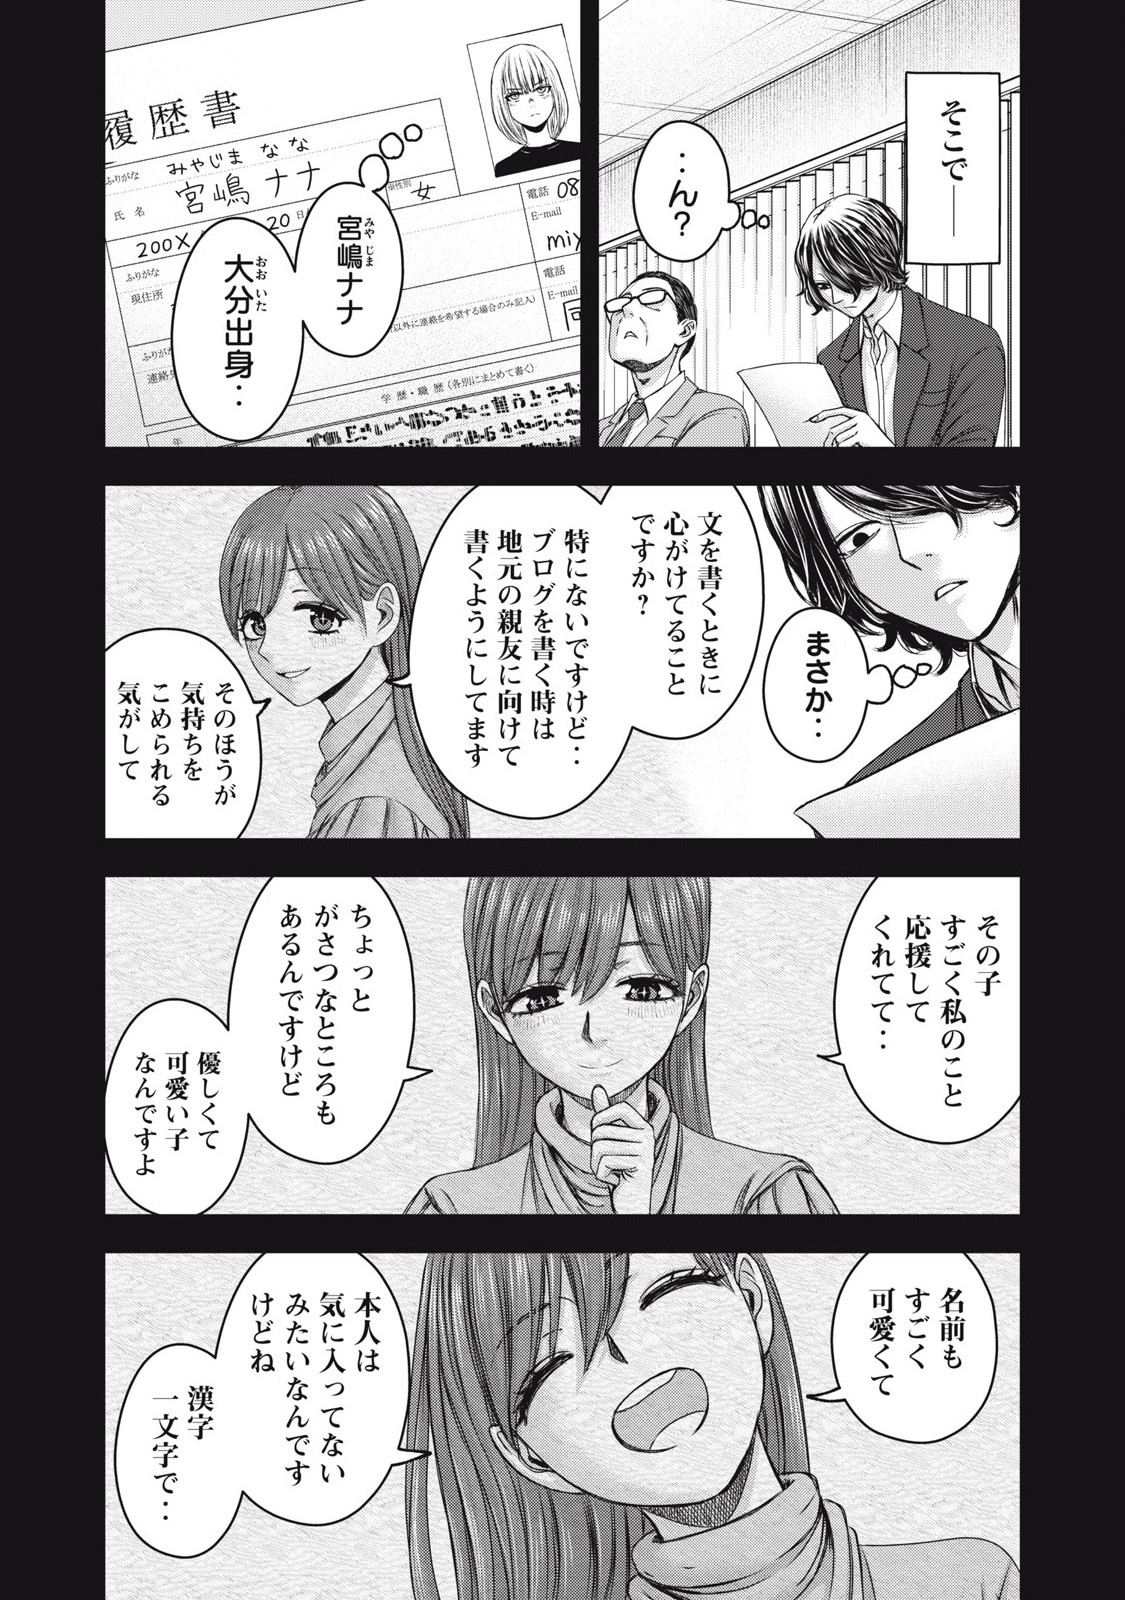 Watashi no Arika - Chapter 53 - Page 5